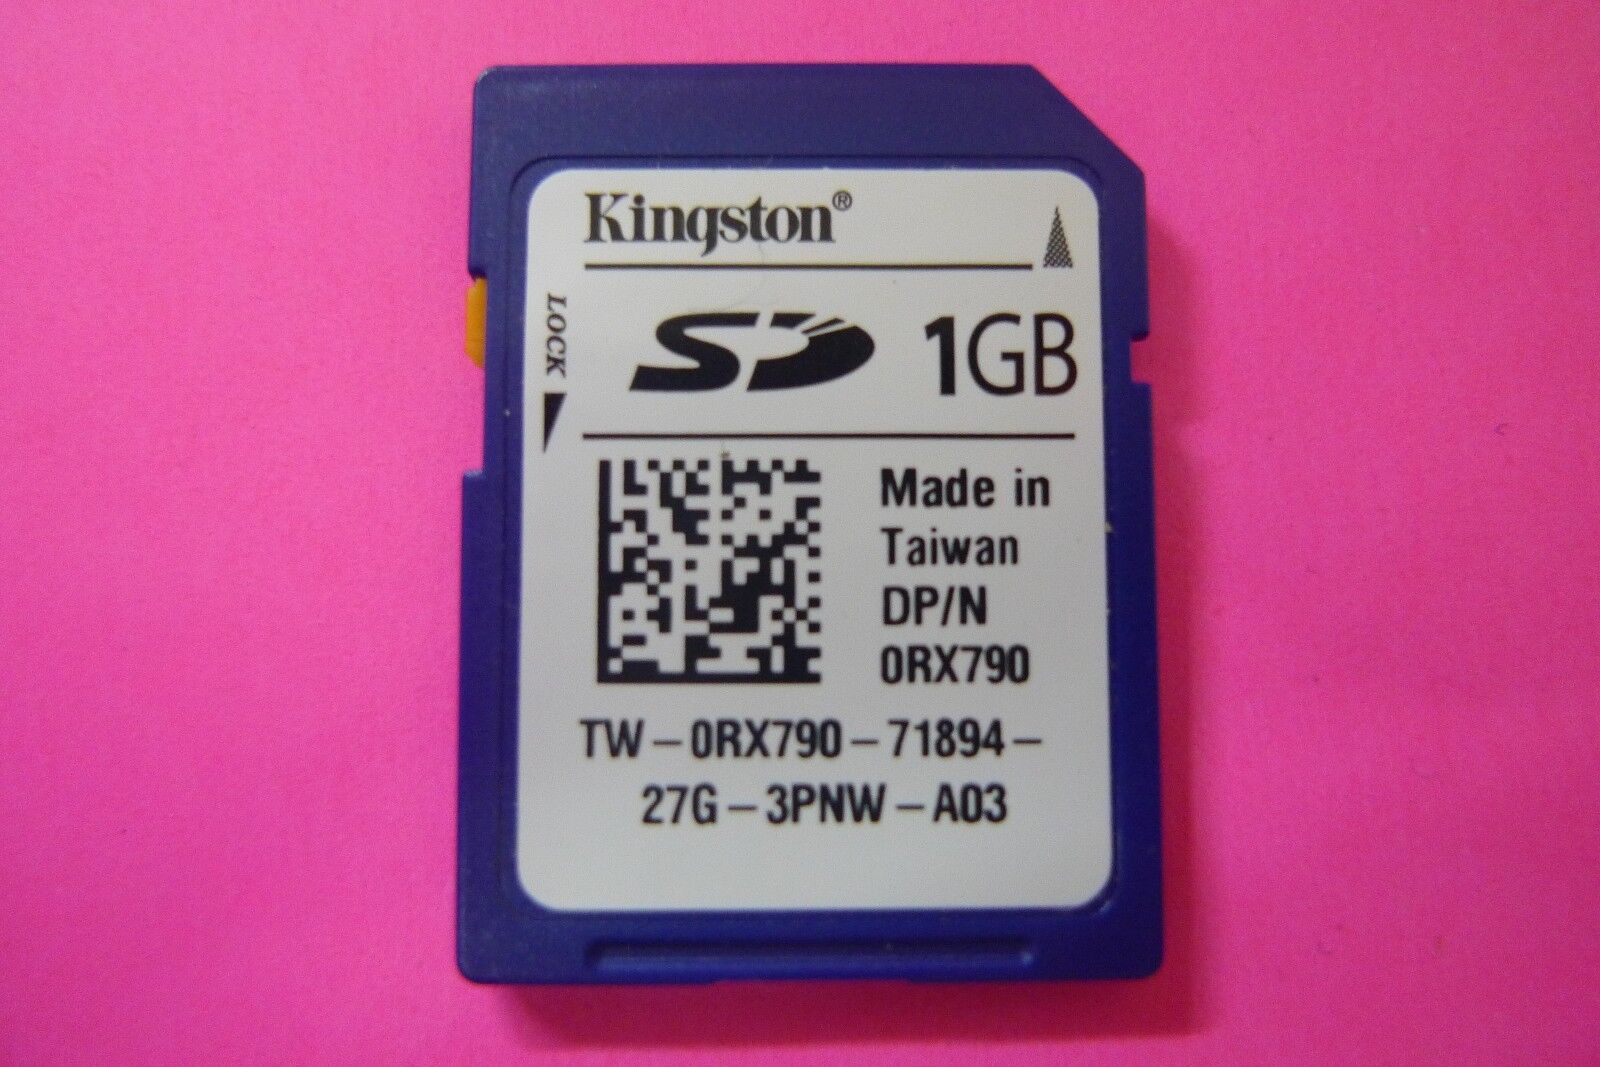 GENUINE Kingston 1GB Flash Memory SD Card RX790